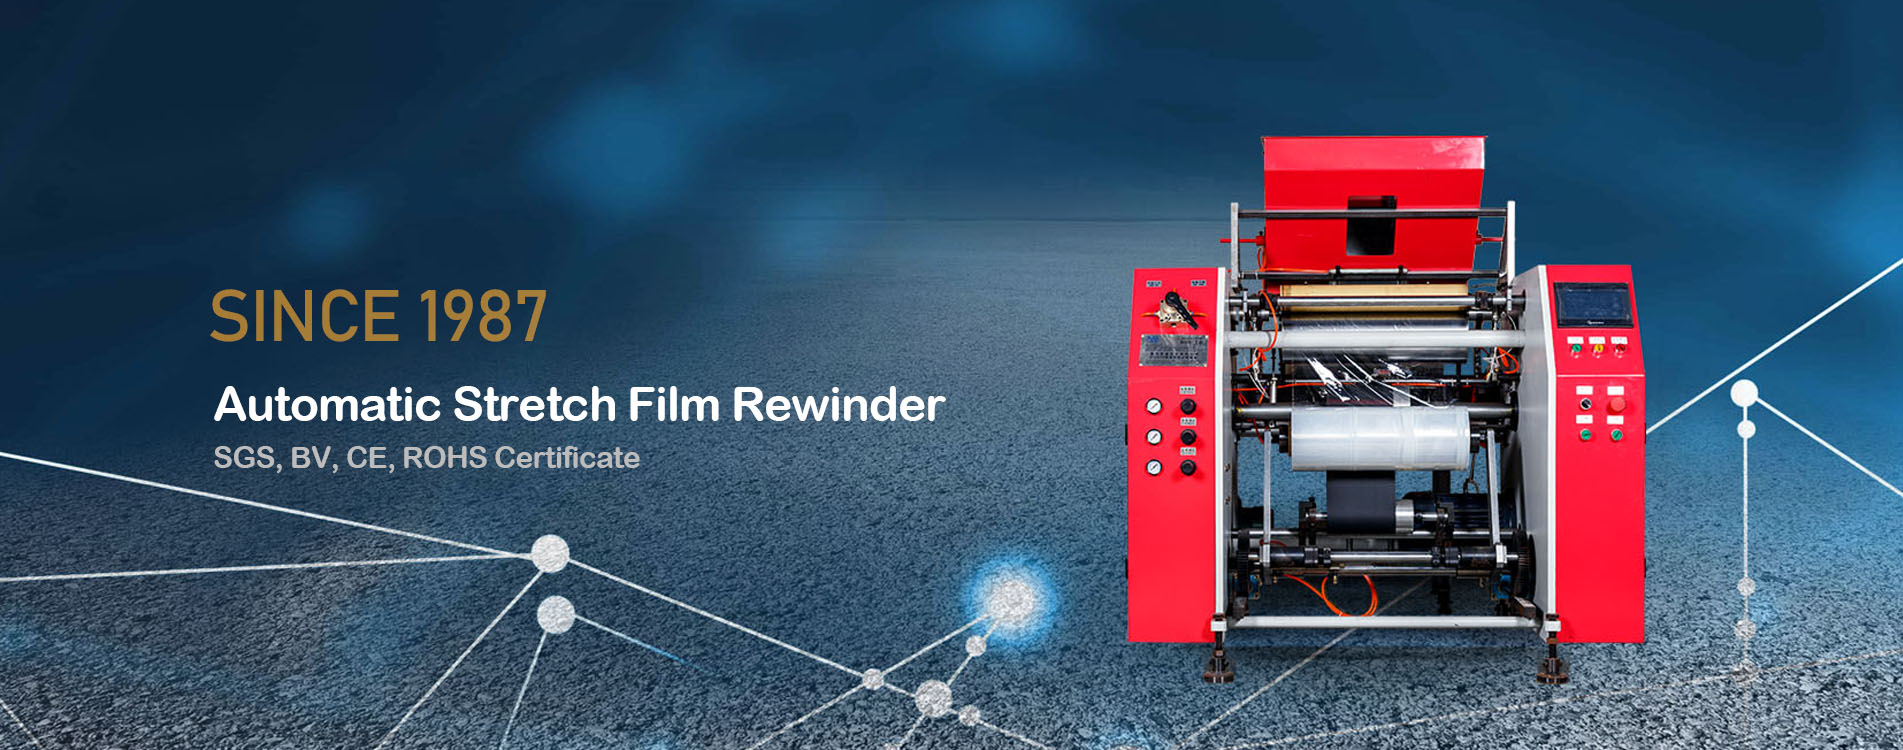 Automatic Stretch Film Rewinder